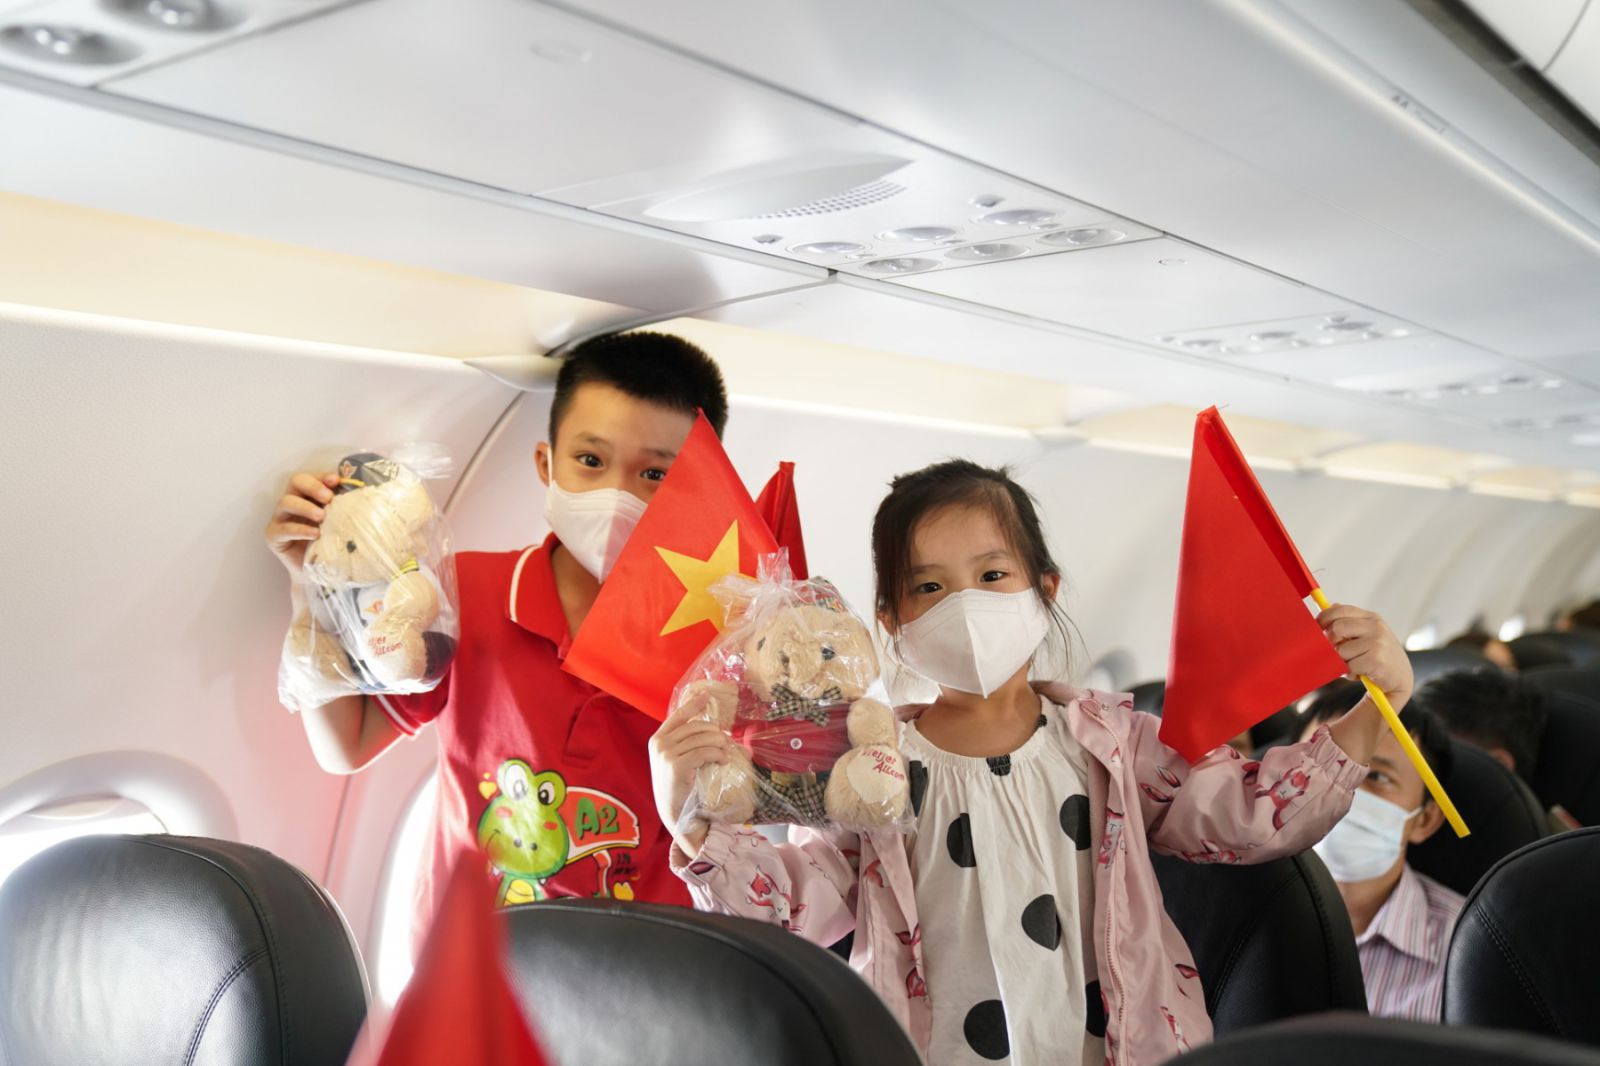 Hàng trăm hành khách trên chuyến bay VJ455 từ thủ đô Hà Nội tới Đảo Ngọc Phú Quốc đã hòa mình vào không gian âm nhạc và còn nhận được những món quà lưu niệm từ phi hành đoàn Vietjet.